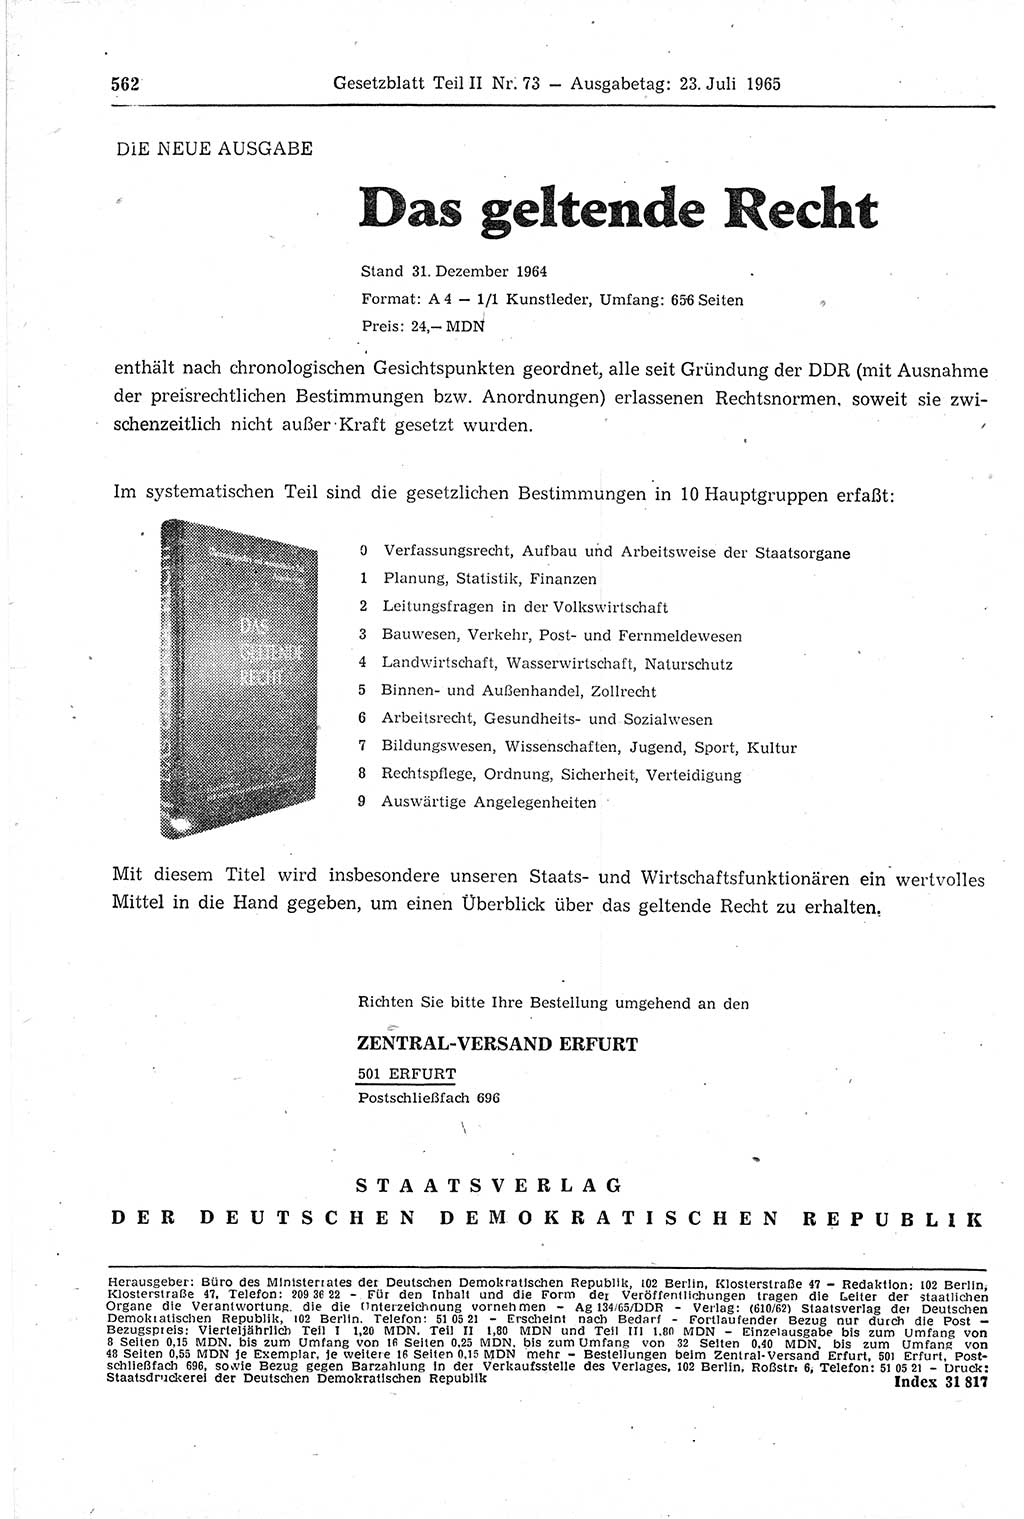 Gesetzblatt (GBl.) der Deutschen Demokratischen Republik (DDR) Teil ⅠⅠ 1965, Seite 562 (GBl. DDR ⅠⅠ 1965, S. 562)